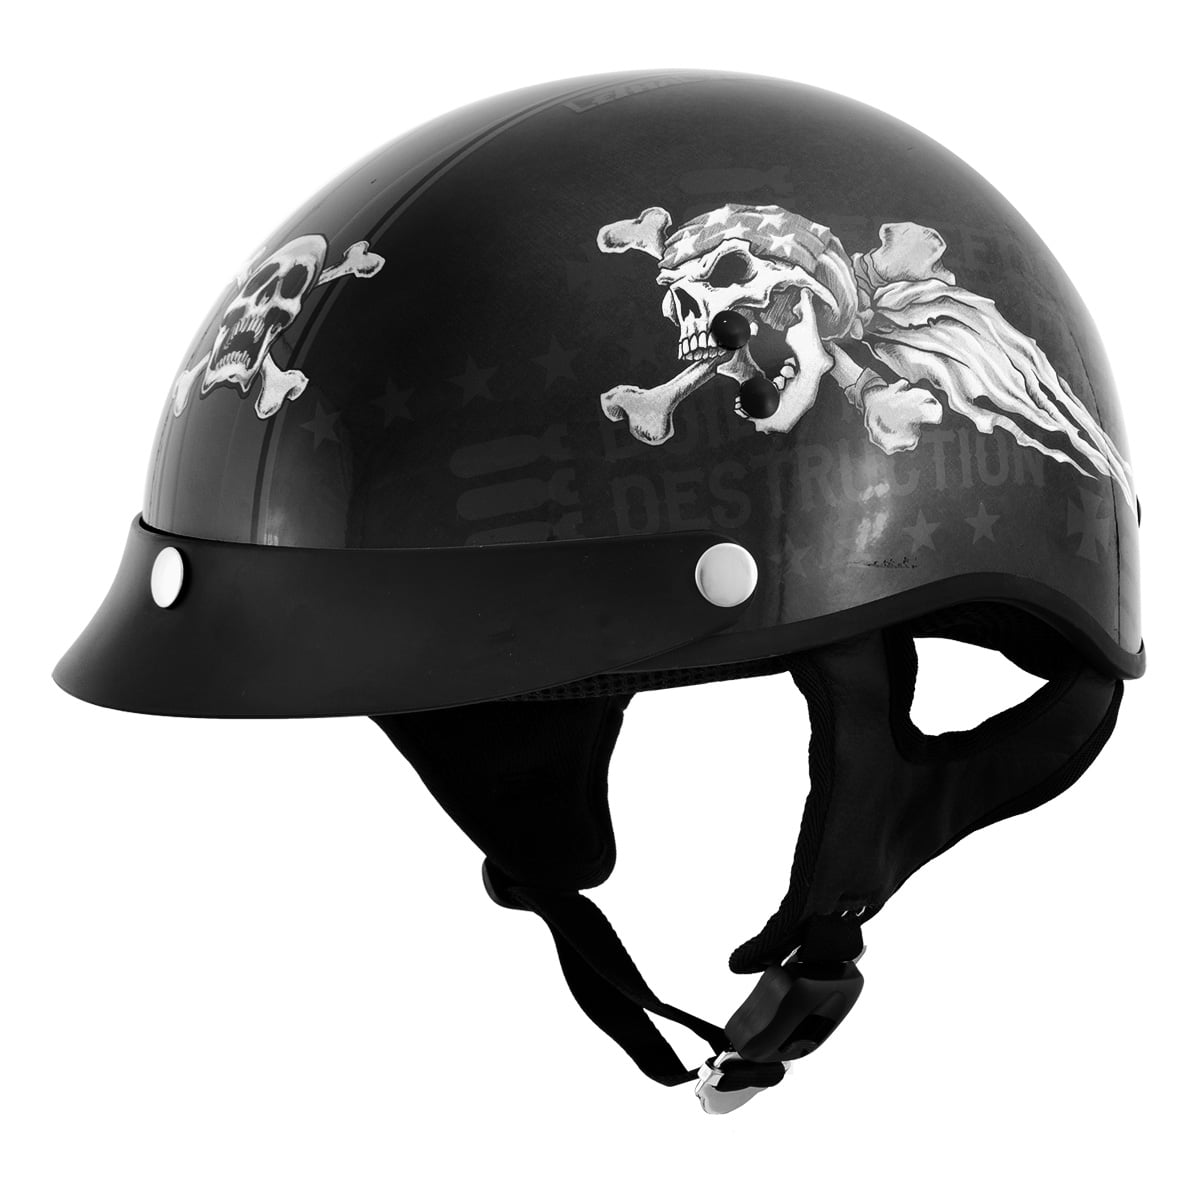 None Branded Unisex Adult Bicycle Half Helmet Skull Helmet Cap Open Helmet with Retractable Flip Sun Visor 